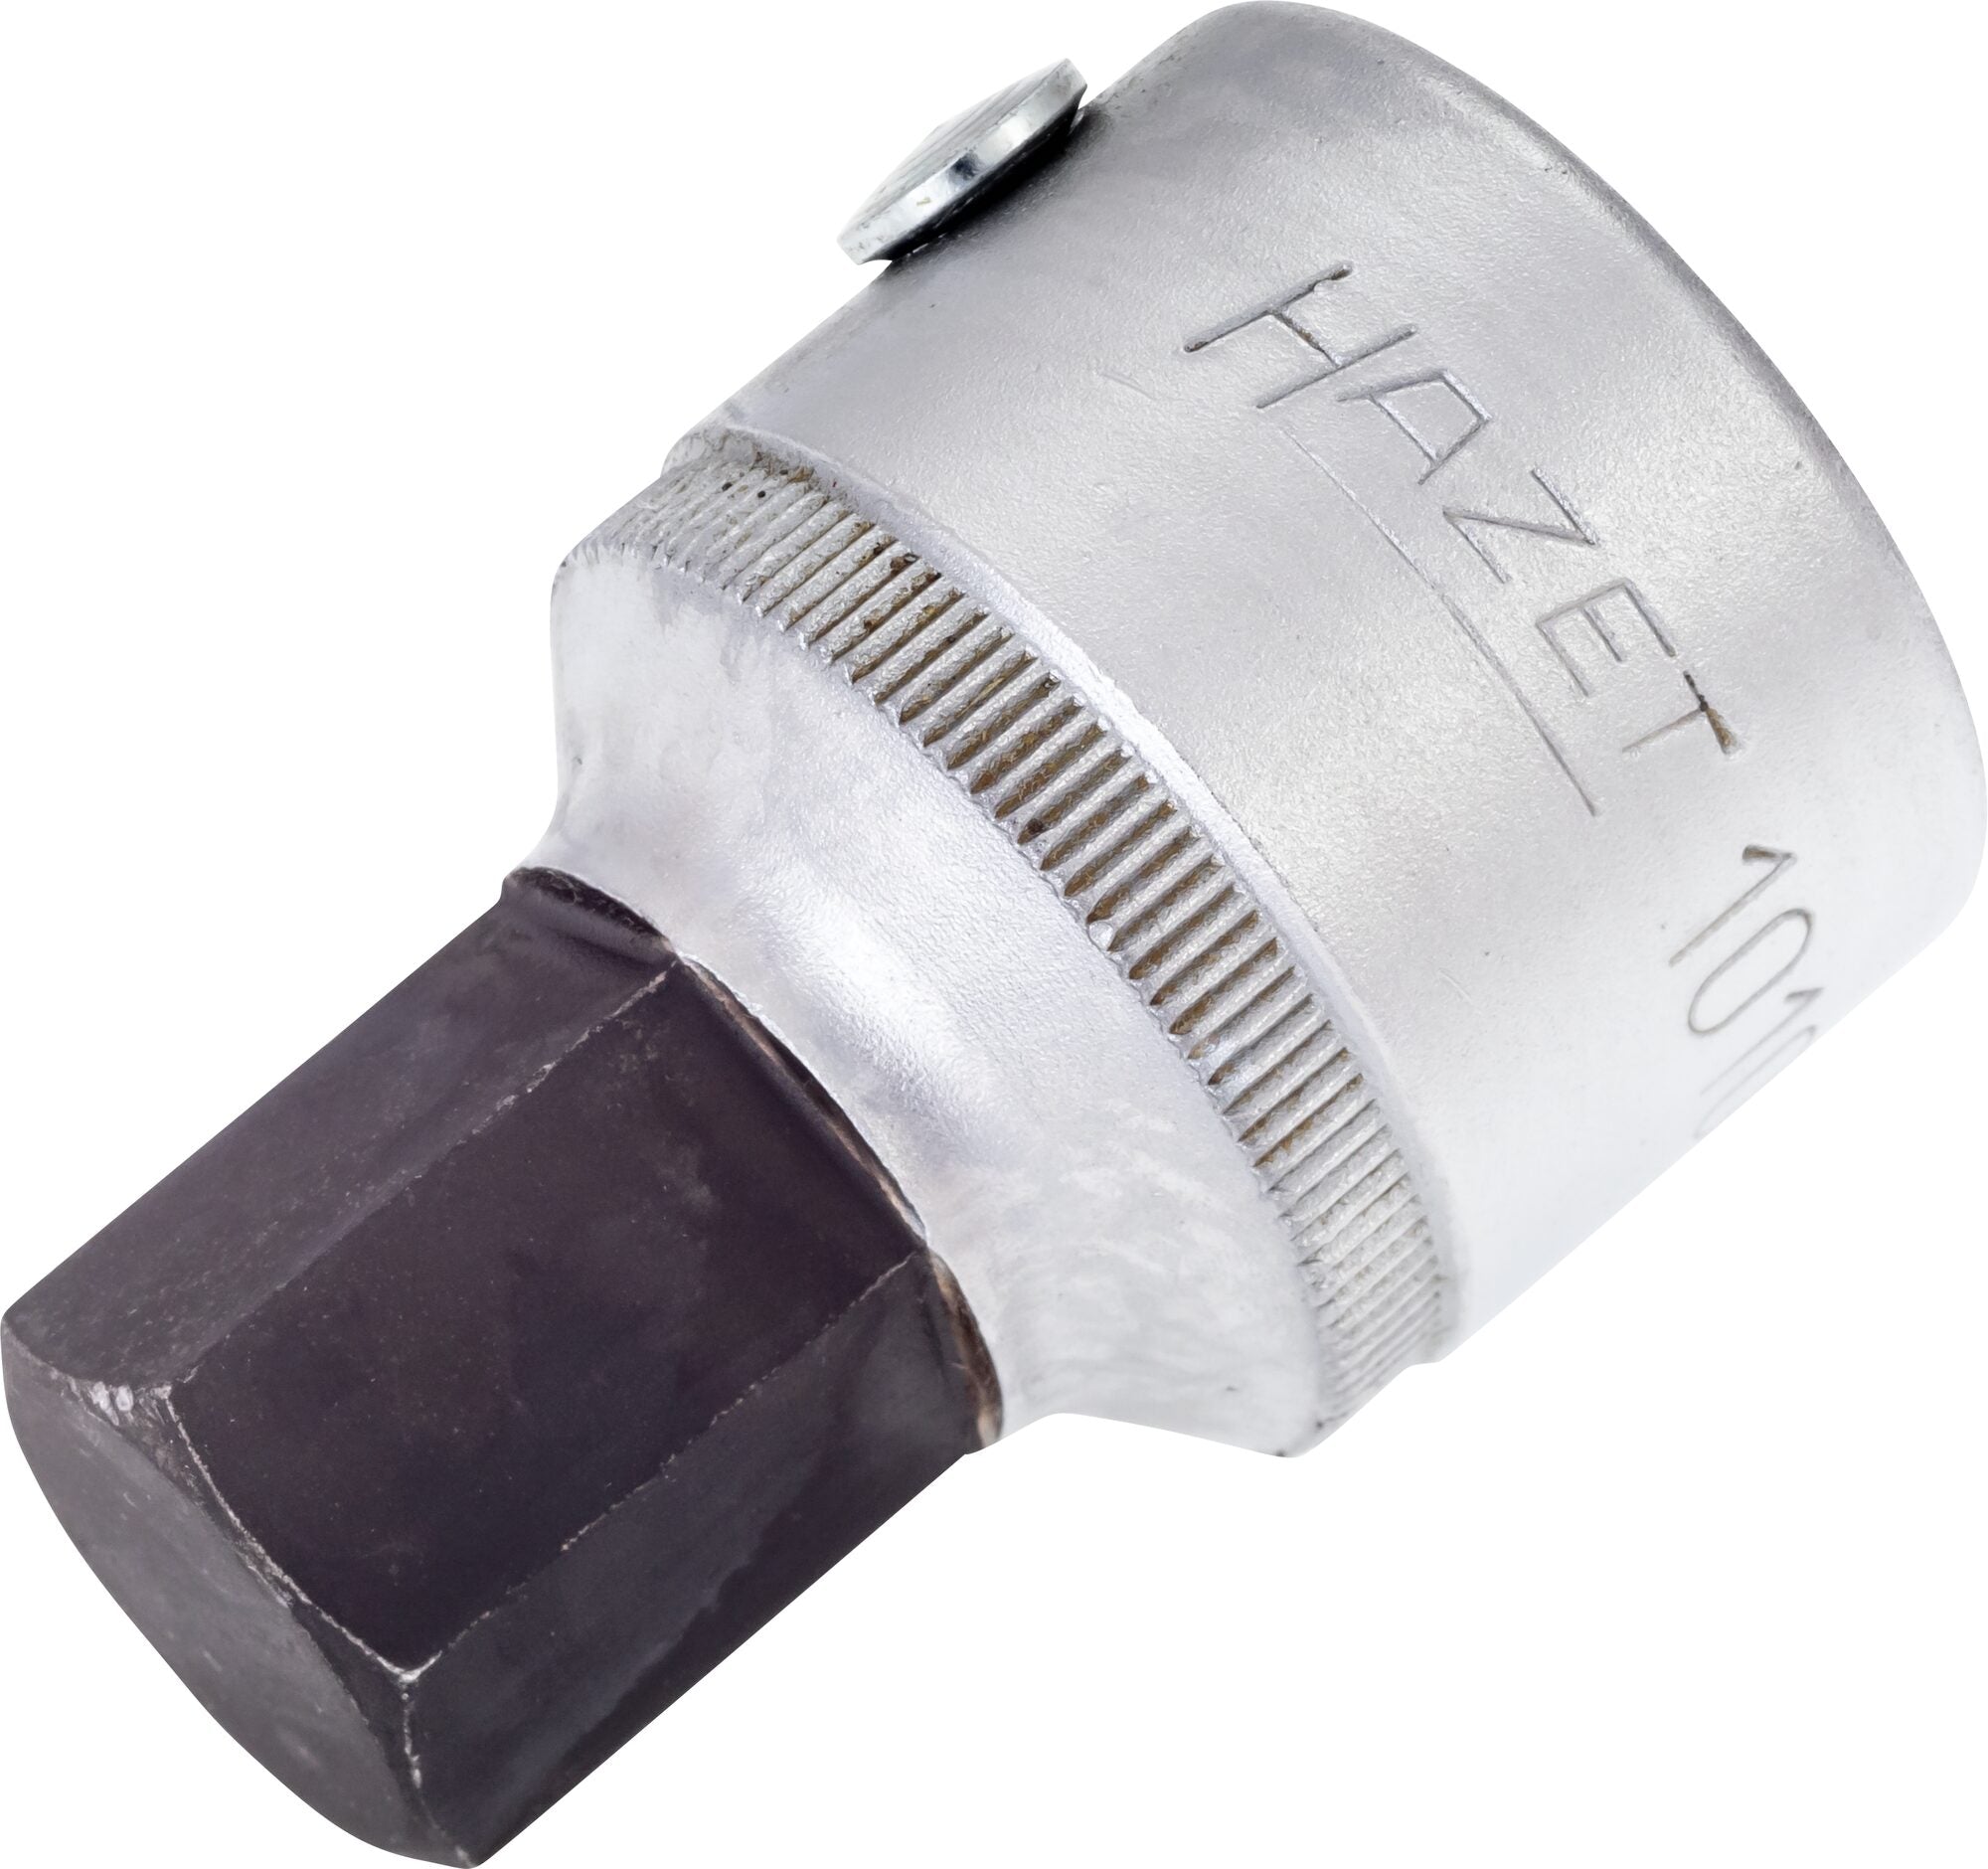 Hazet 3/4in 19mm Hex Screwdriver Socket 1010-19 For Sale Online – Mektronics